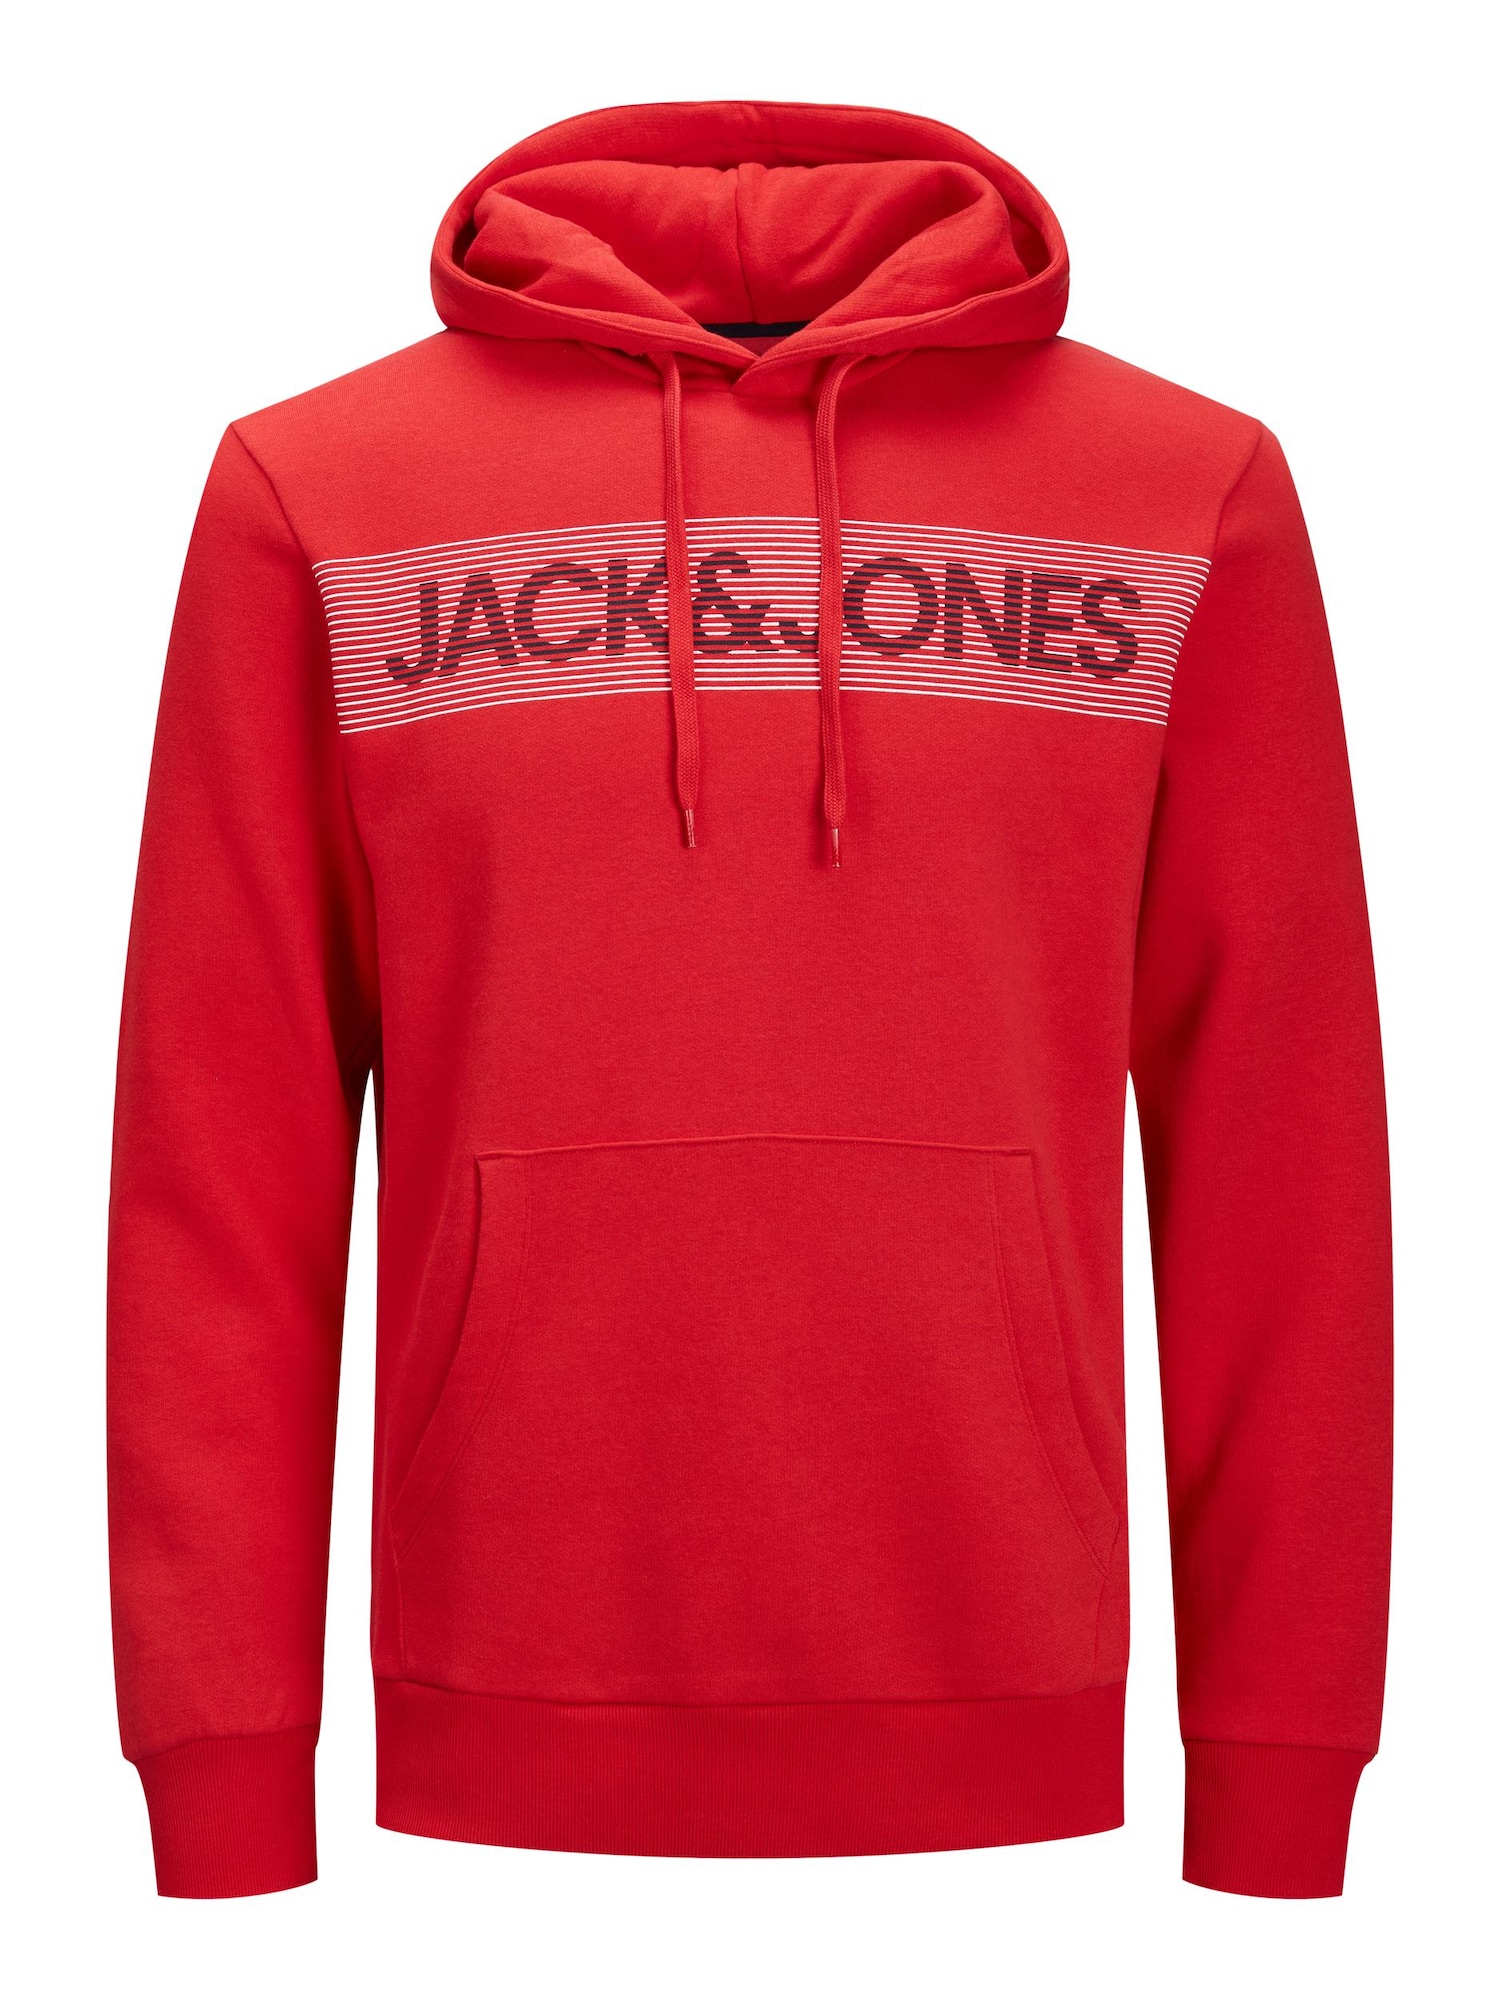 JACK & JONES Sweatshirt rot / wei / dunkelrot